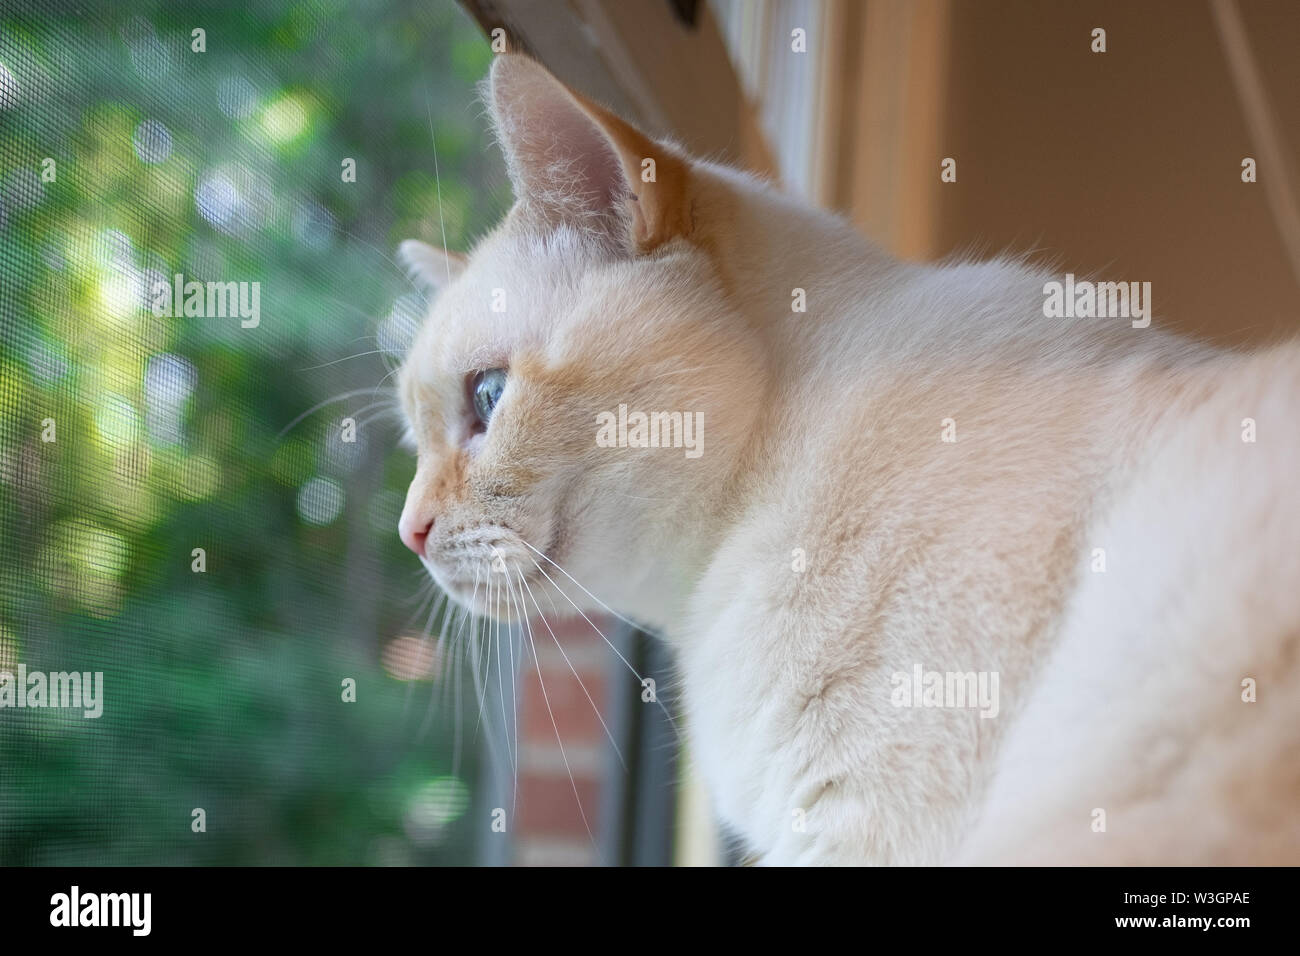 Un flamepoint siamois blanc aux yeux bleus regardant par une fenêtre, avec un fond vert luxuriant. Banque D'Images